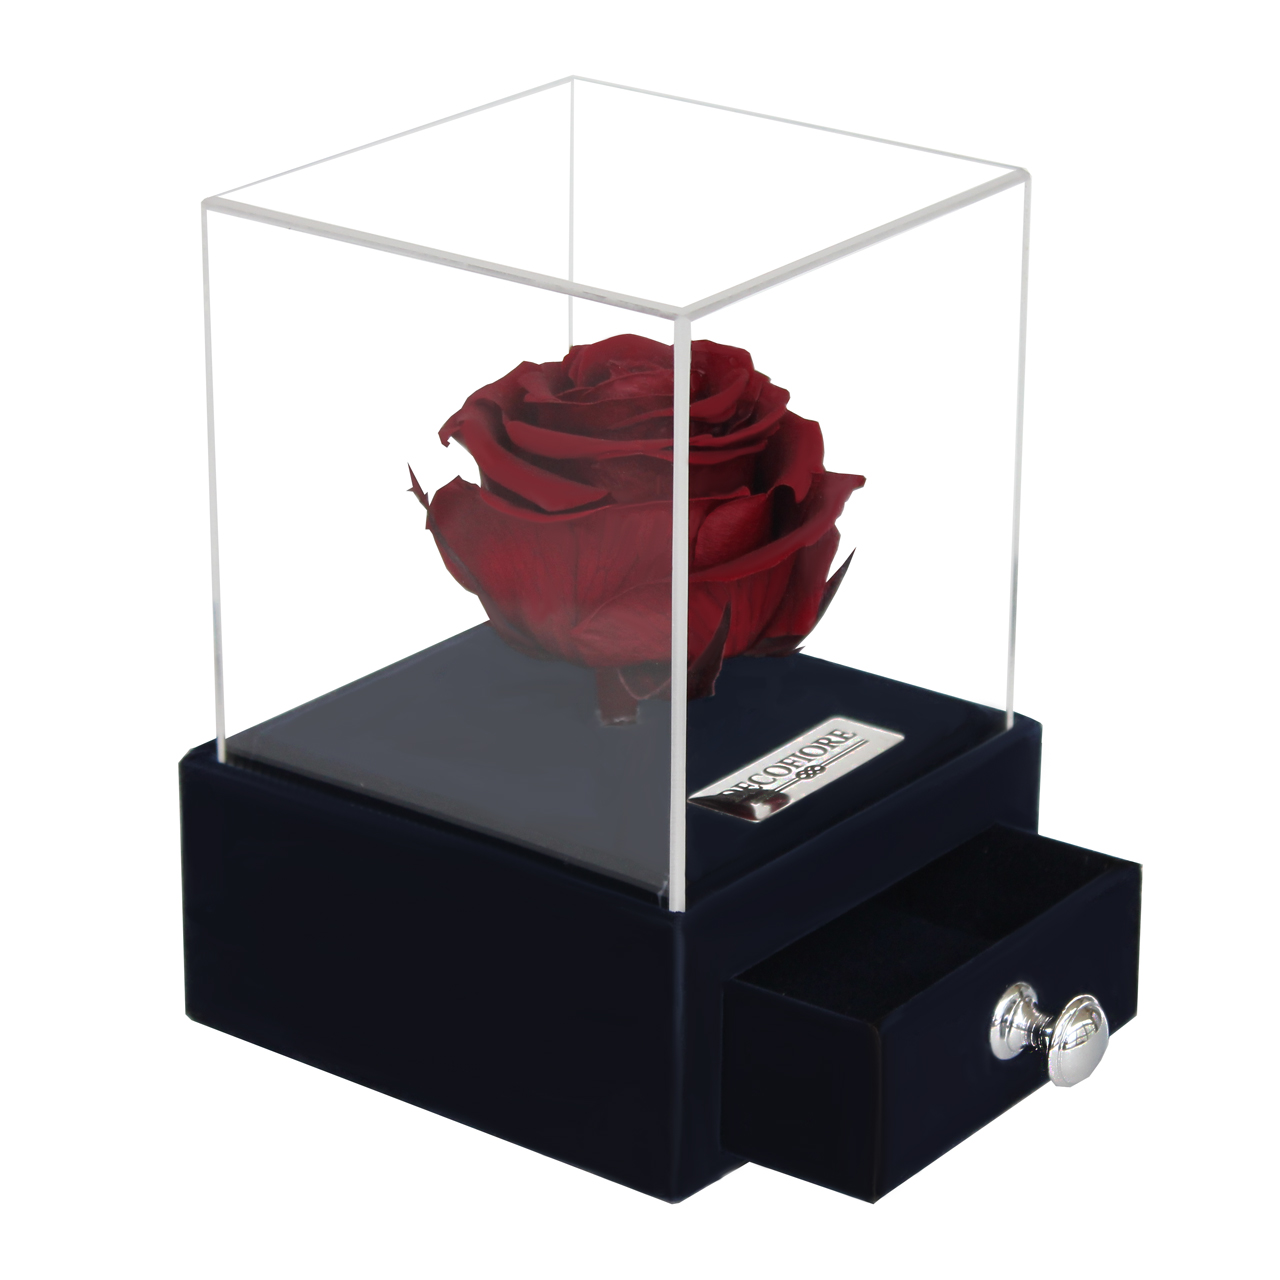 جعبه جواهرات و کارت هدیه رز جاودان مدل گل ماندگار دکوفیوره - به همراه پاكت مخصوص